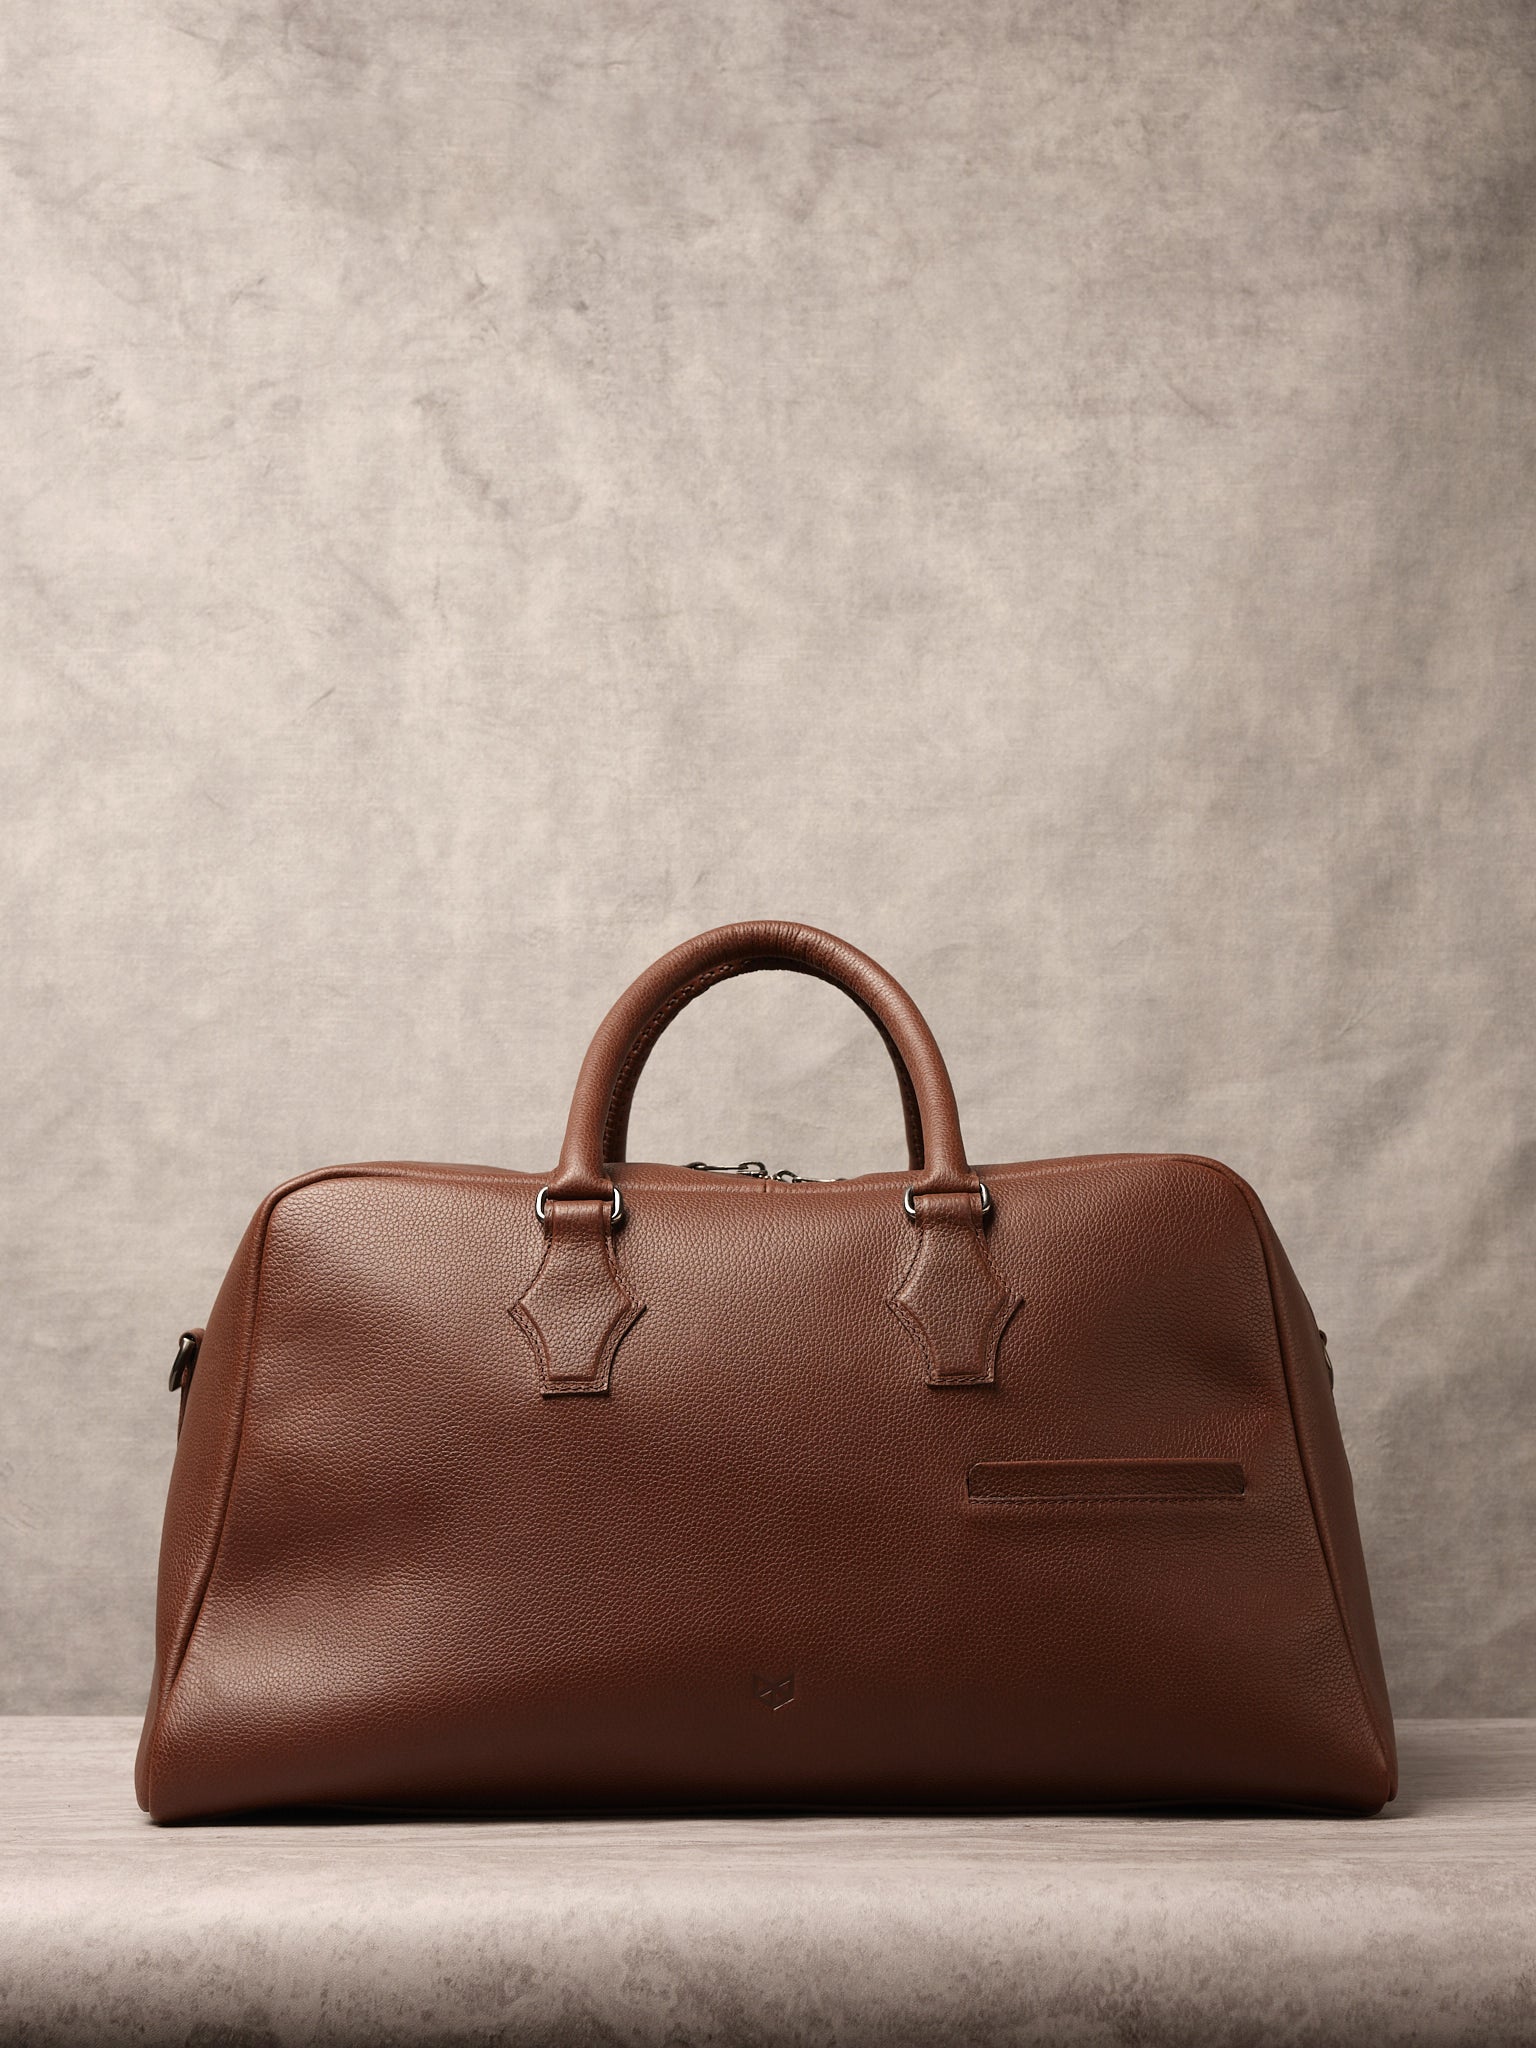 Weekender Bag. Leather Duffle Bag Brown by Capra Leather